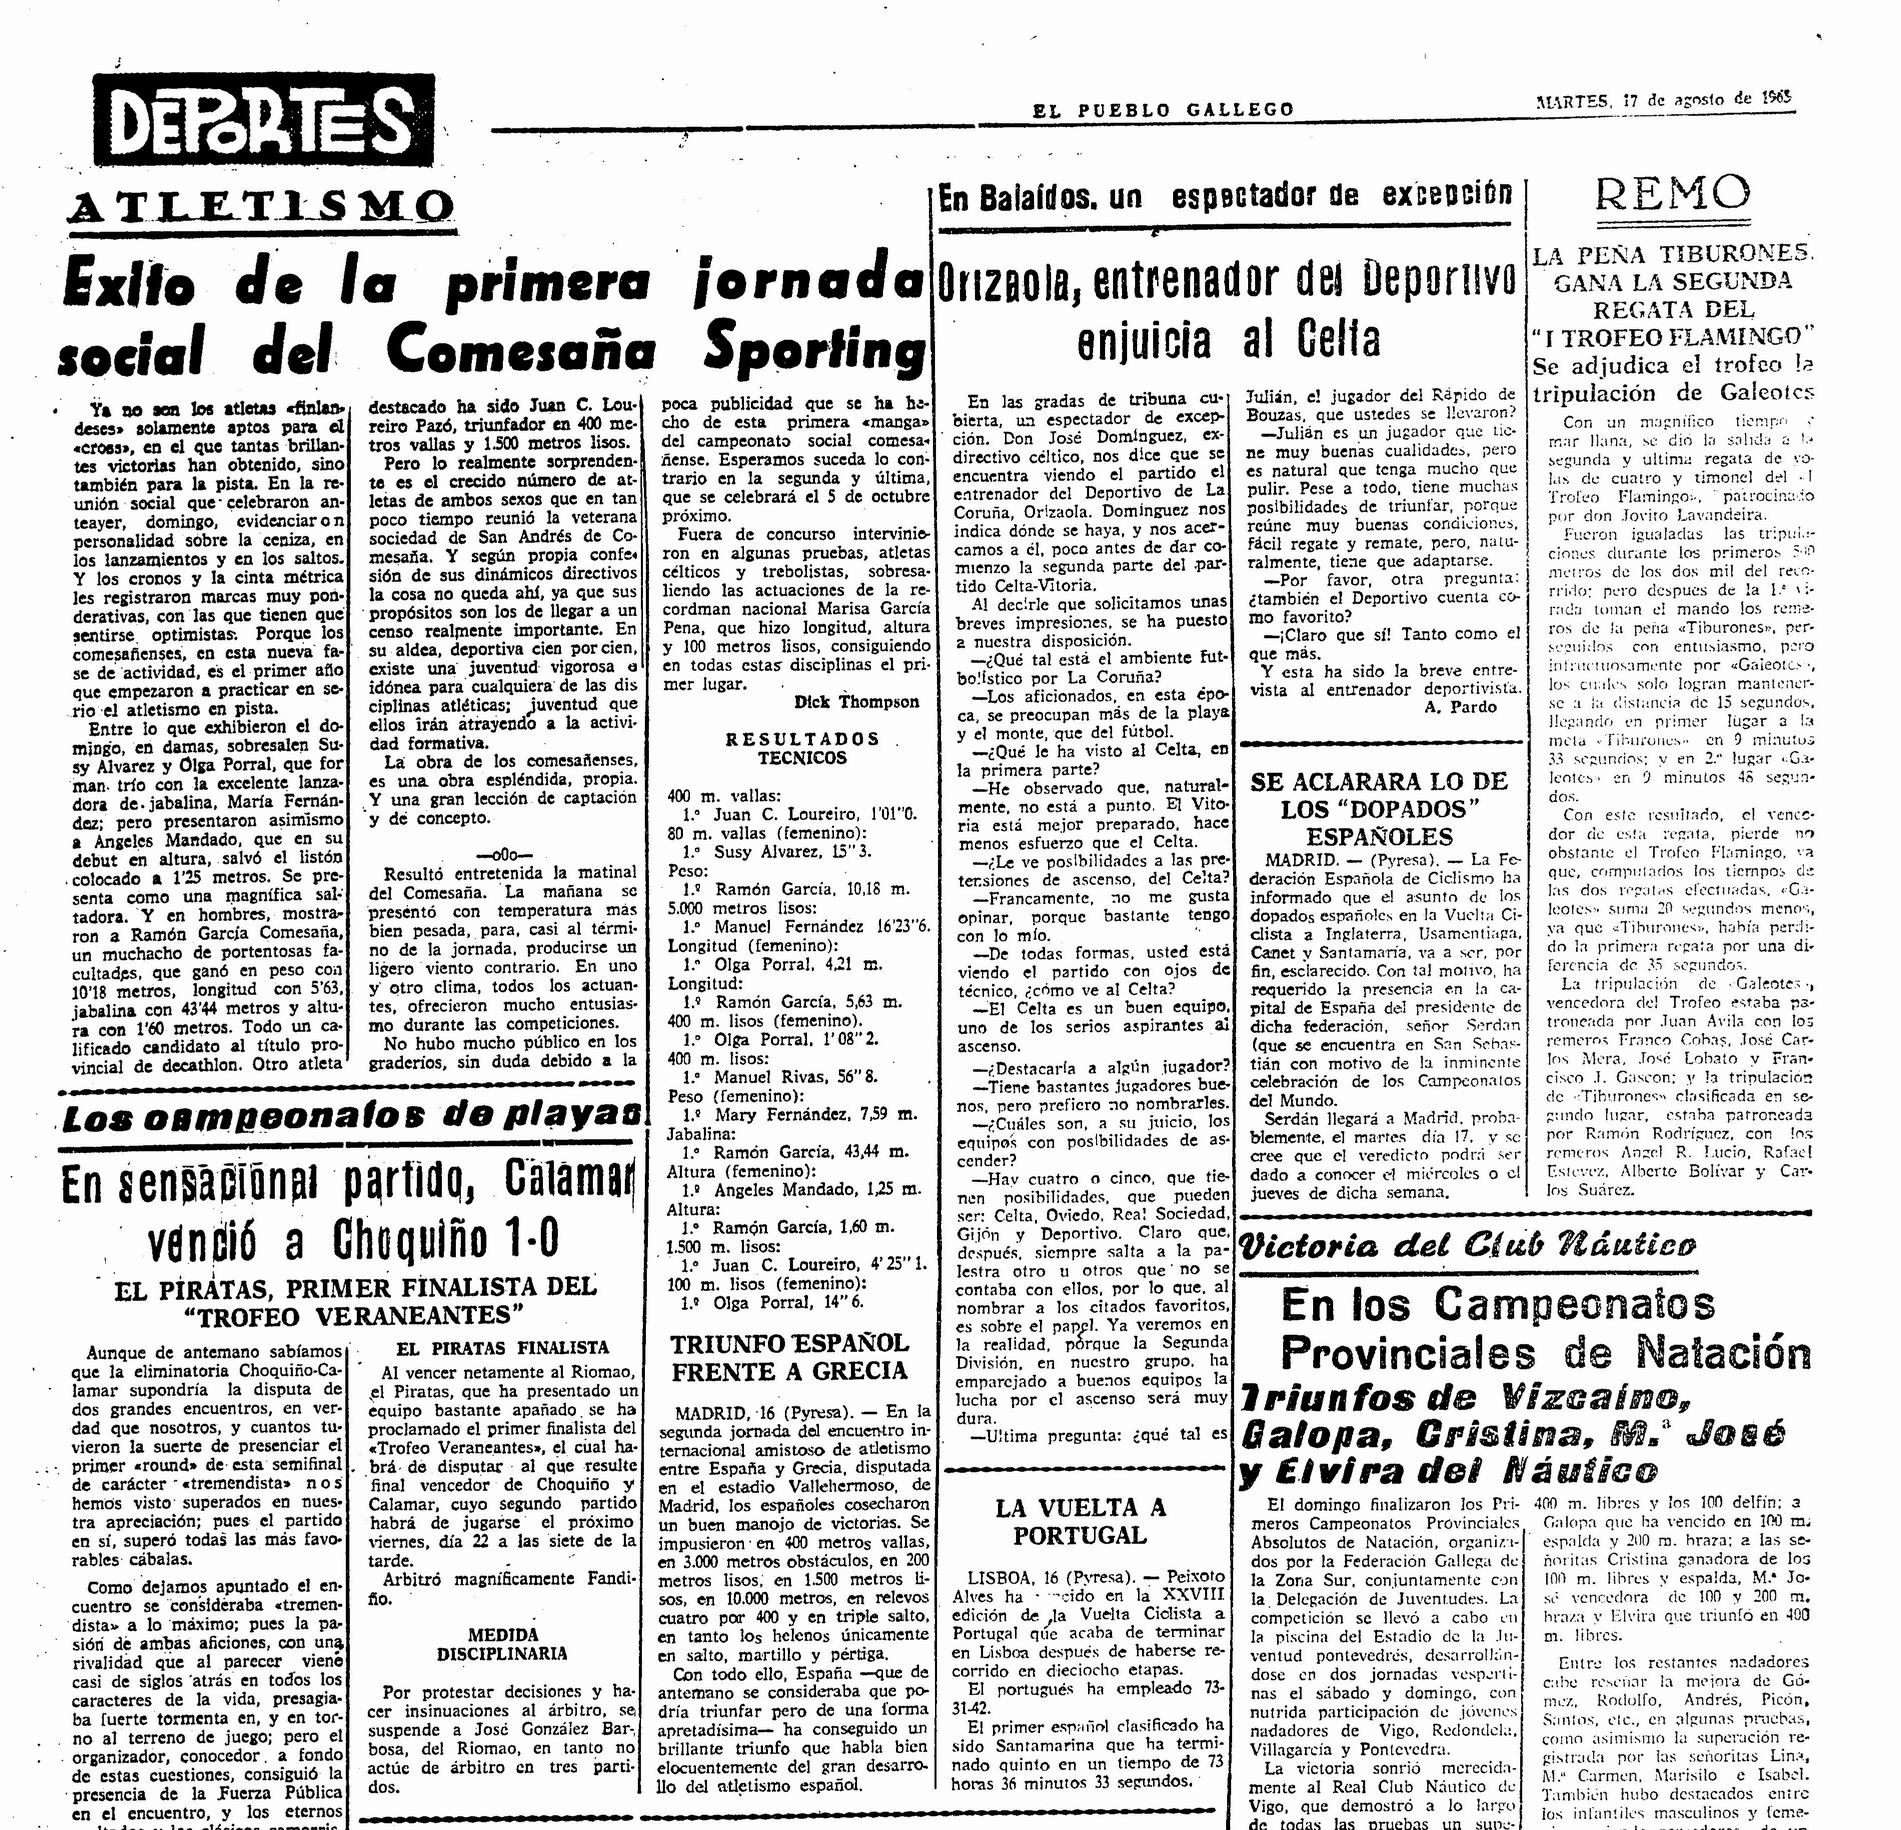 El Pueblo Gallego 17-08-1965